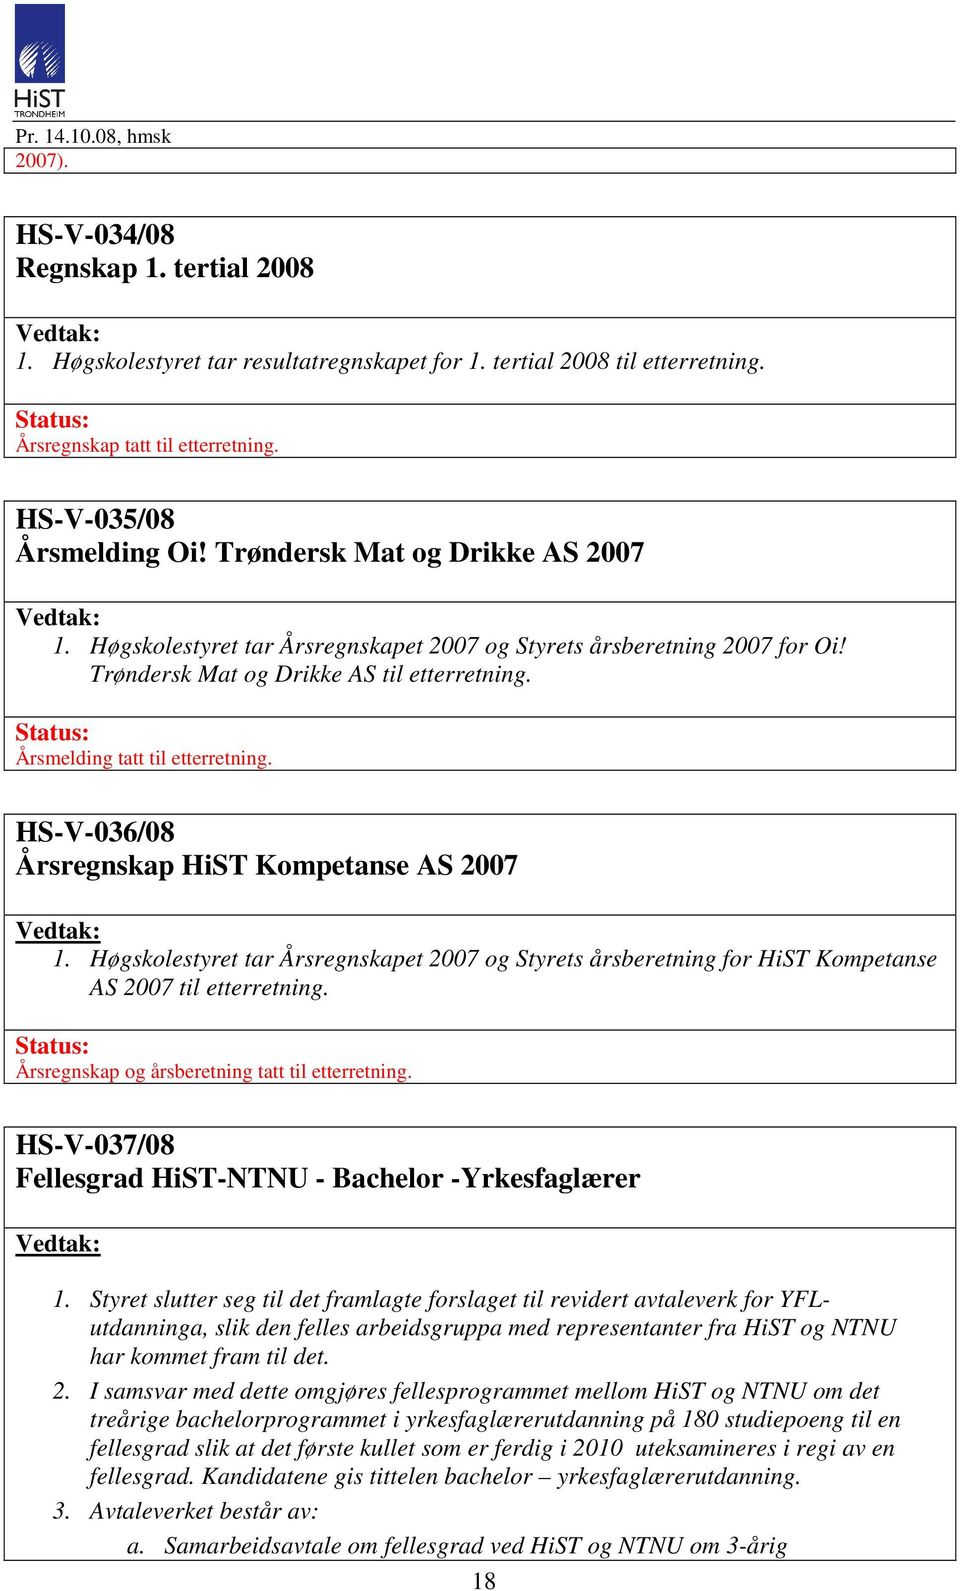 HS-V-036/08 Årsregnskap HiST Kompetanse AS 2007 1. Høgskolestyret tar Årsregnskapet 2007 og Styrets årsberetning for HiST Kompetanse AS 2007 til etterretning.